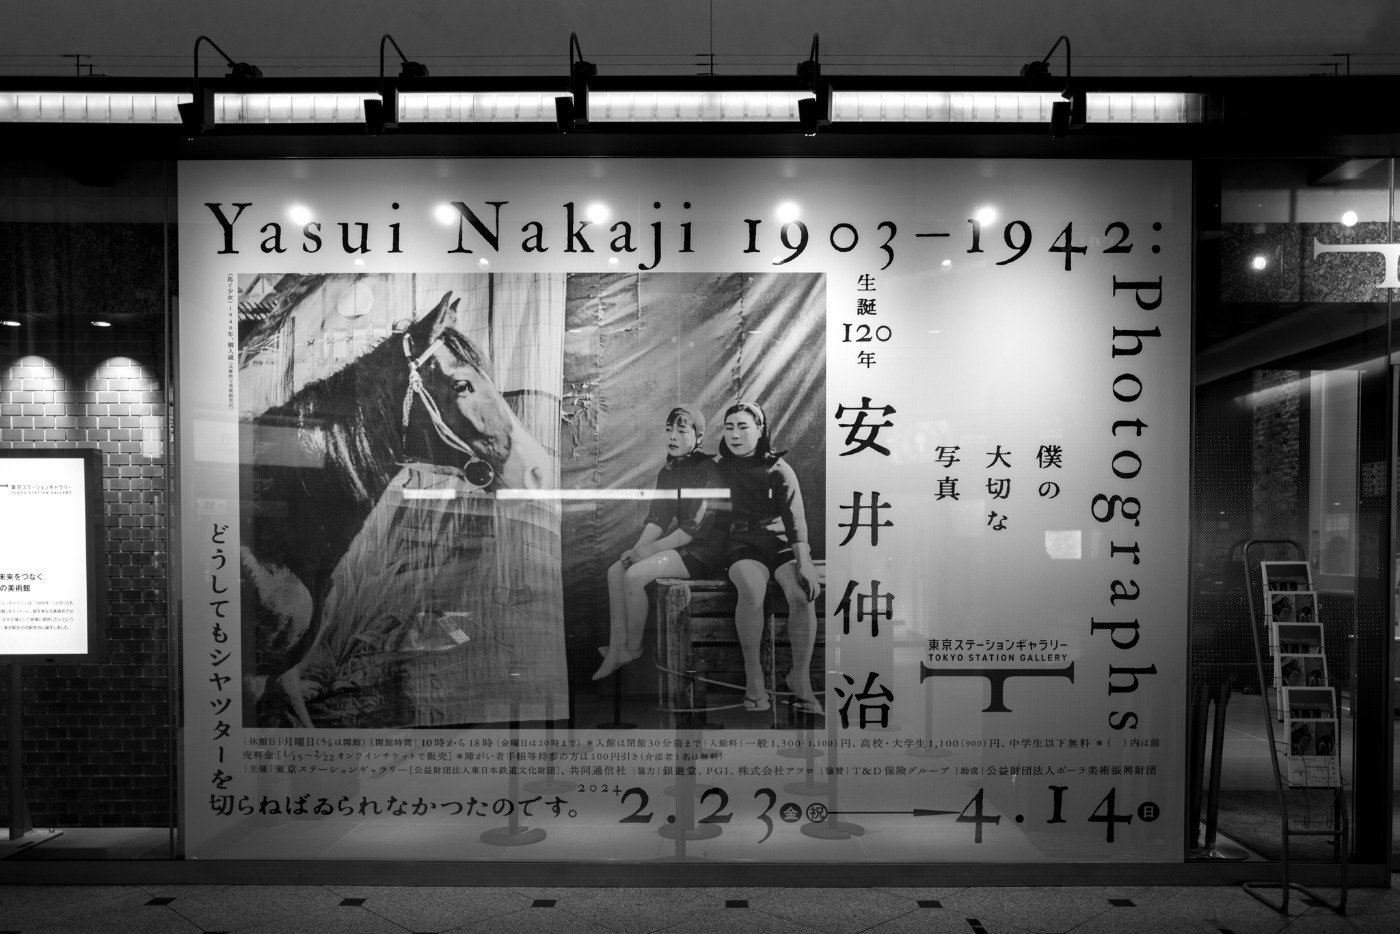 東京ステーションギャラリー「生誕120年 安井仲治 僕の大切な写真」